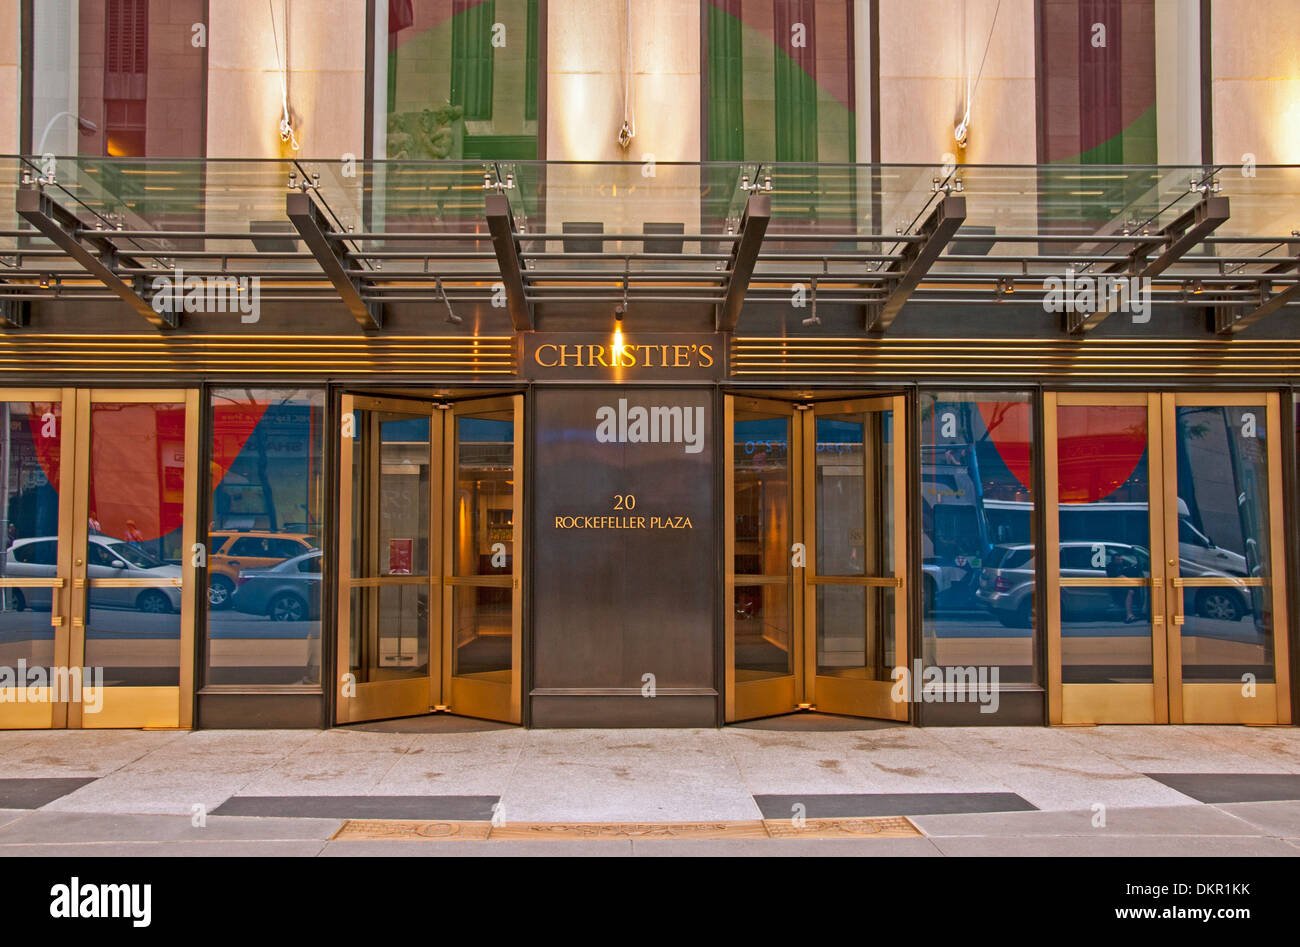 Amerika-Auktion Auktionatoren Christie Christies Stadt Eingabebereich Foyer vordere Eingangstür Manhattan Midtown North America Plaza Stockfoto